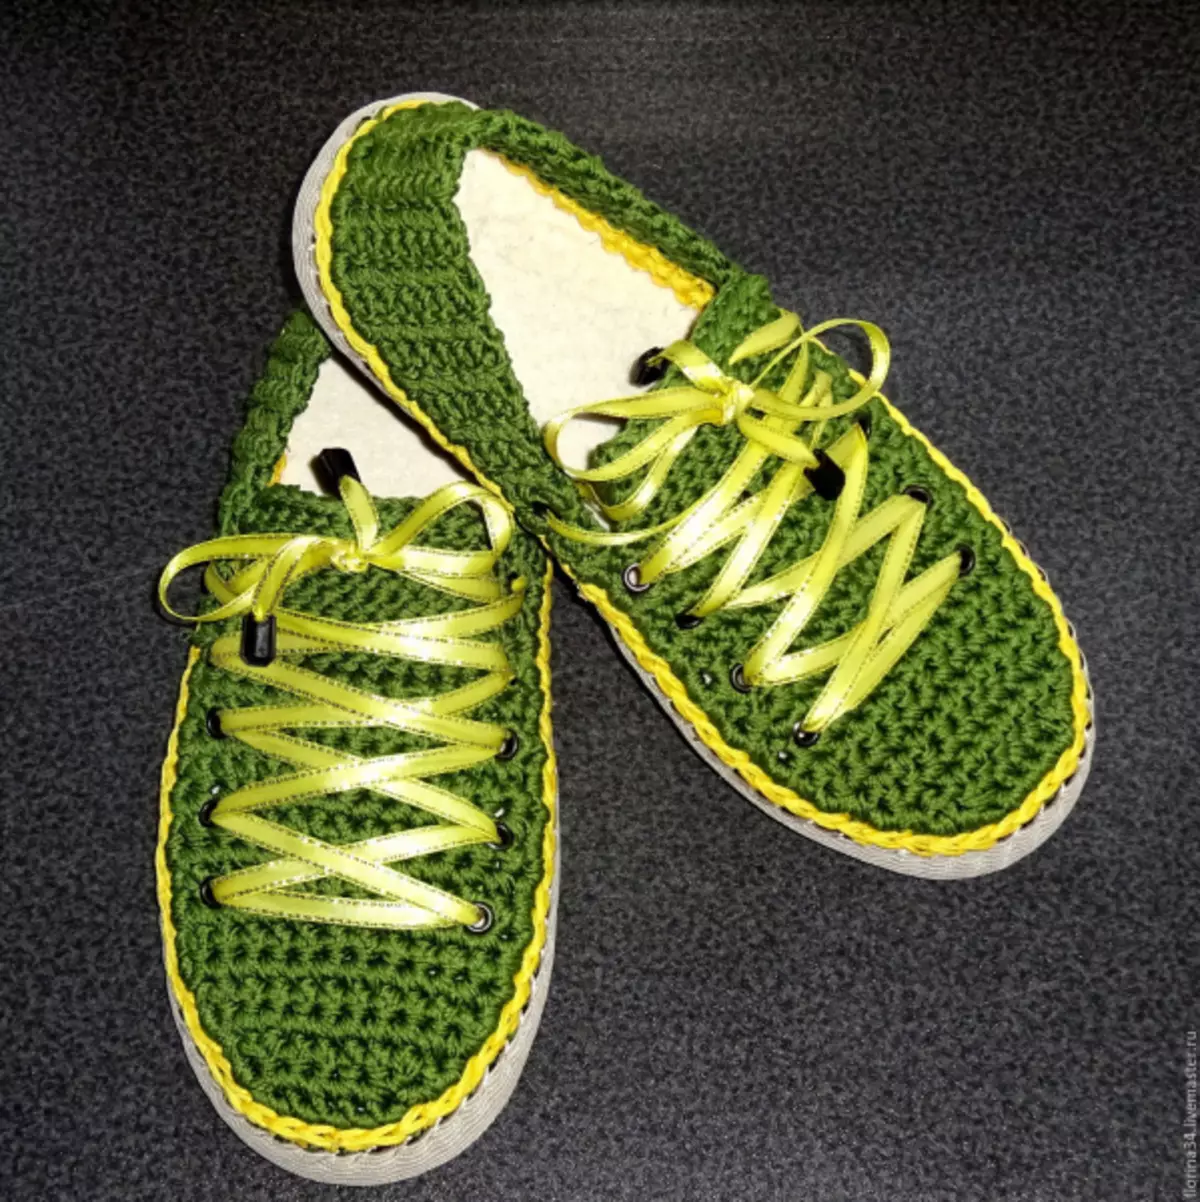 موزے-جوتے جوتے crochet: منصوبوں اور تصاویر کی وضاحت کے ساتھ ویڈیو سبق